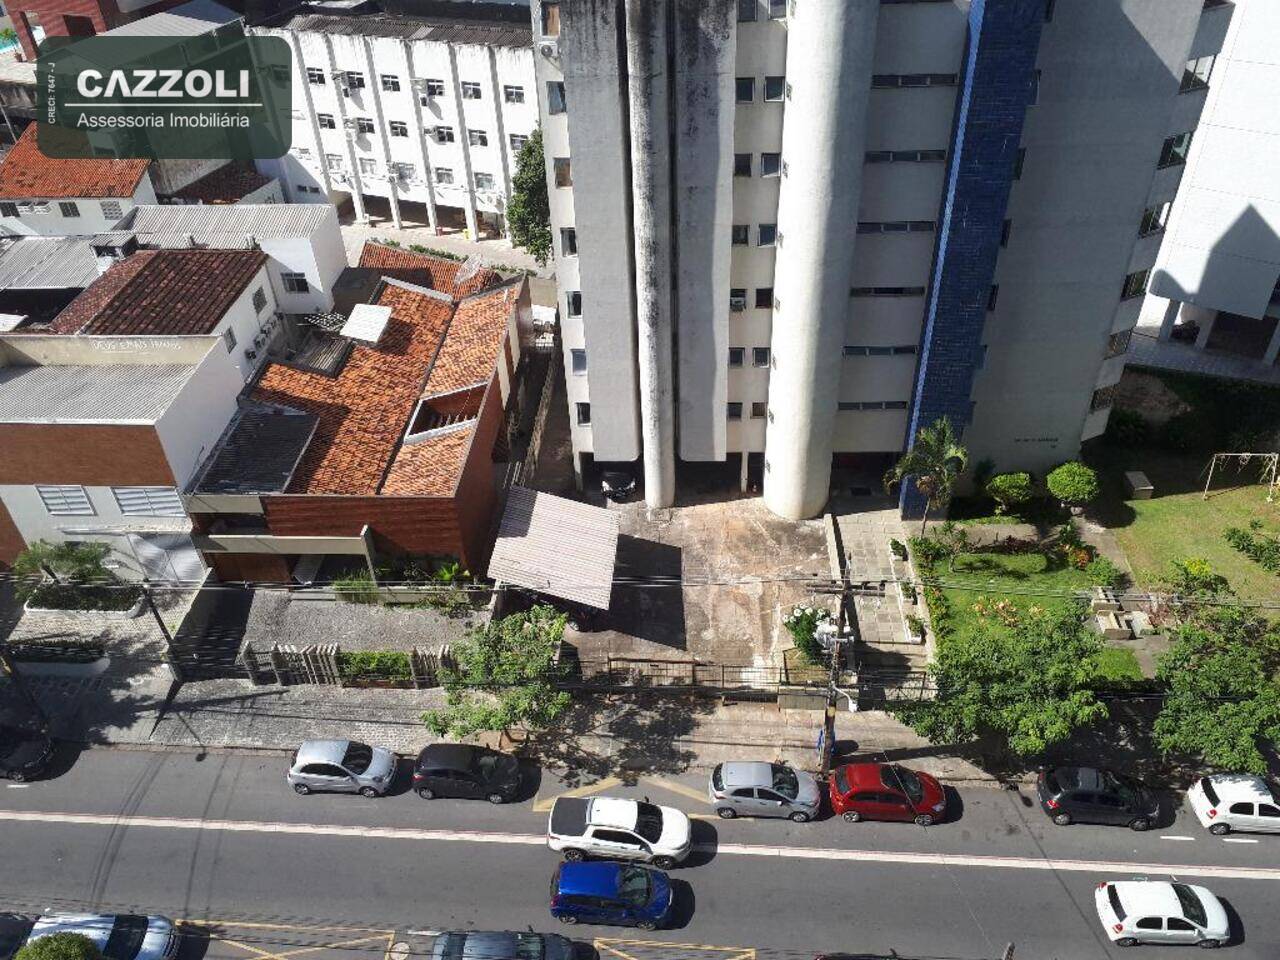 Apartamento Espinheiro, Recife - PE